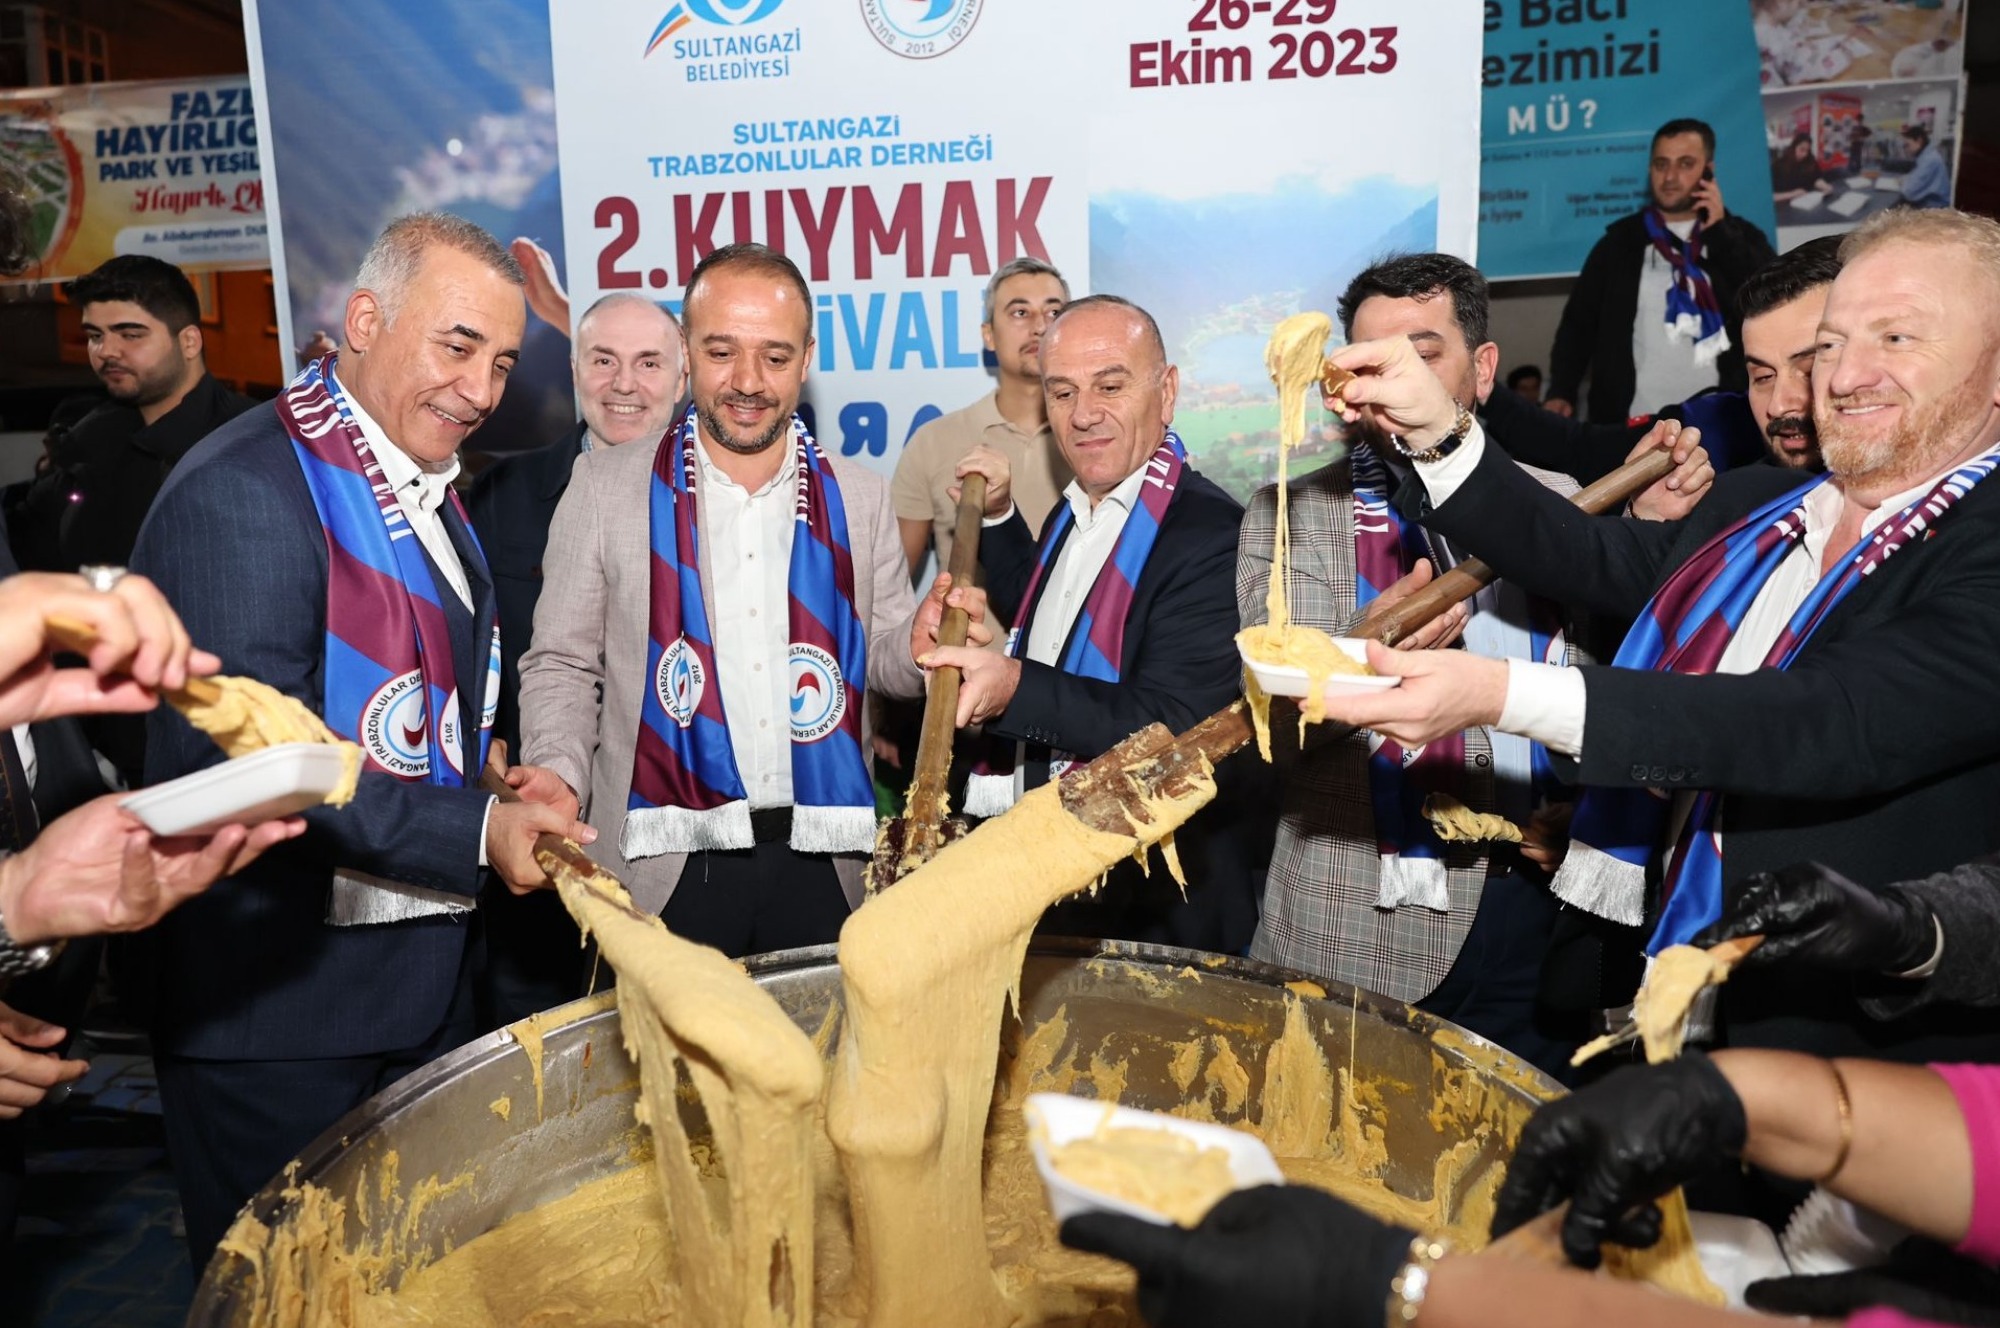 Sultangazi Belediye Başkanı Av. Abdurrahman Dursun: Ekoturizm Projesi ile tüm İstanbullulara hitap edecek doğa ile iç içe bir yaşam alanı oluşturuyoruz.